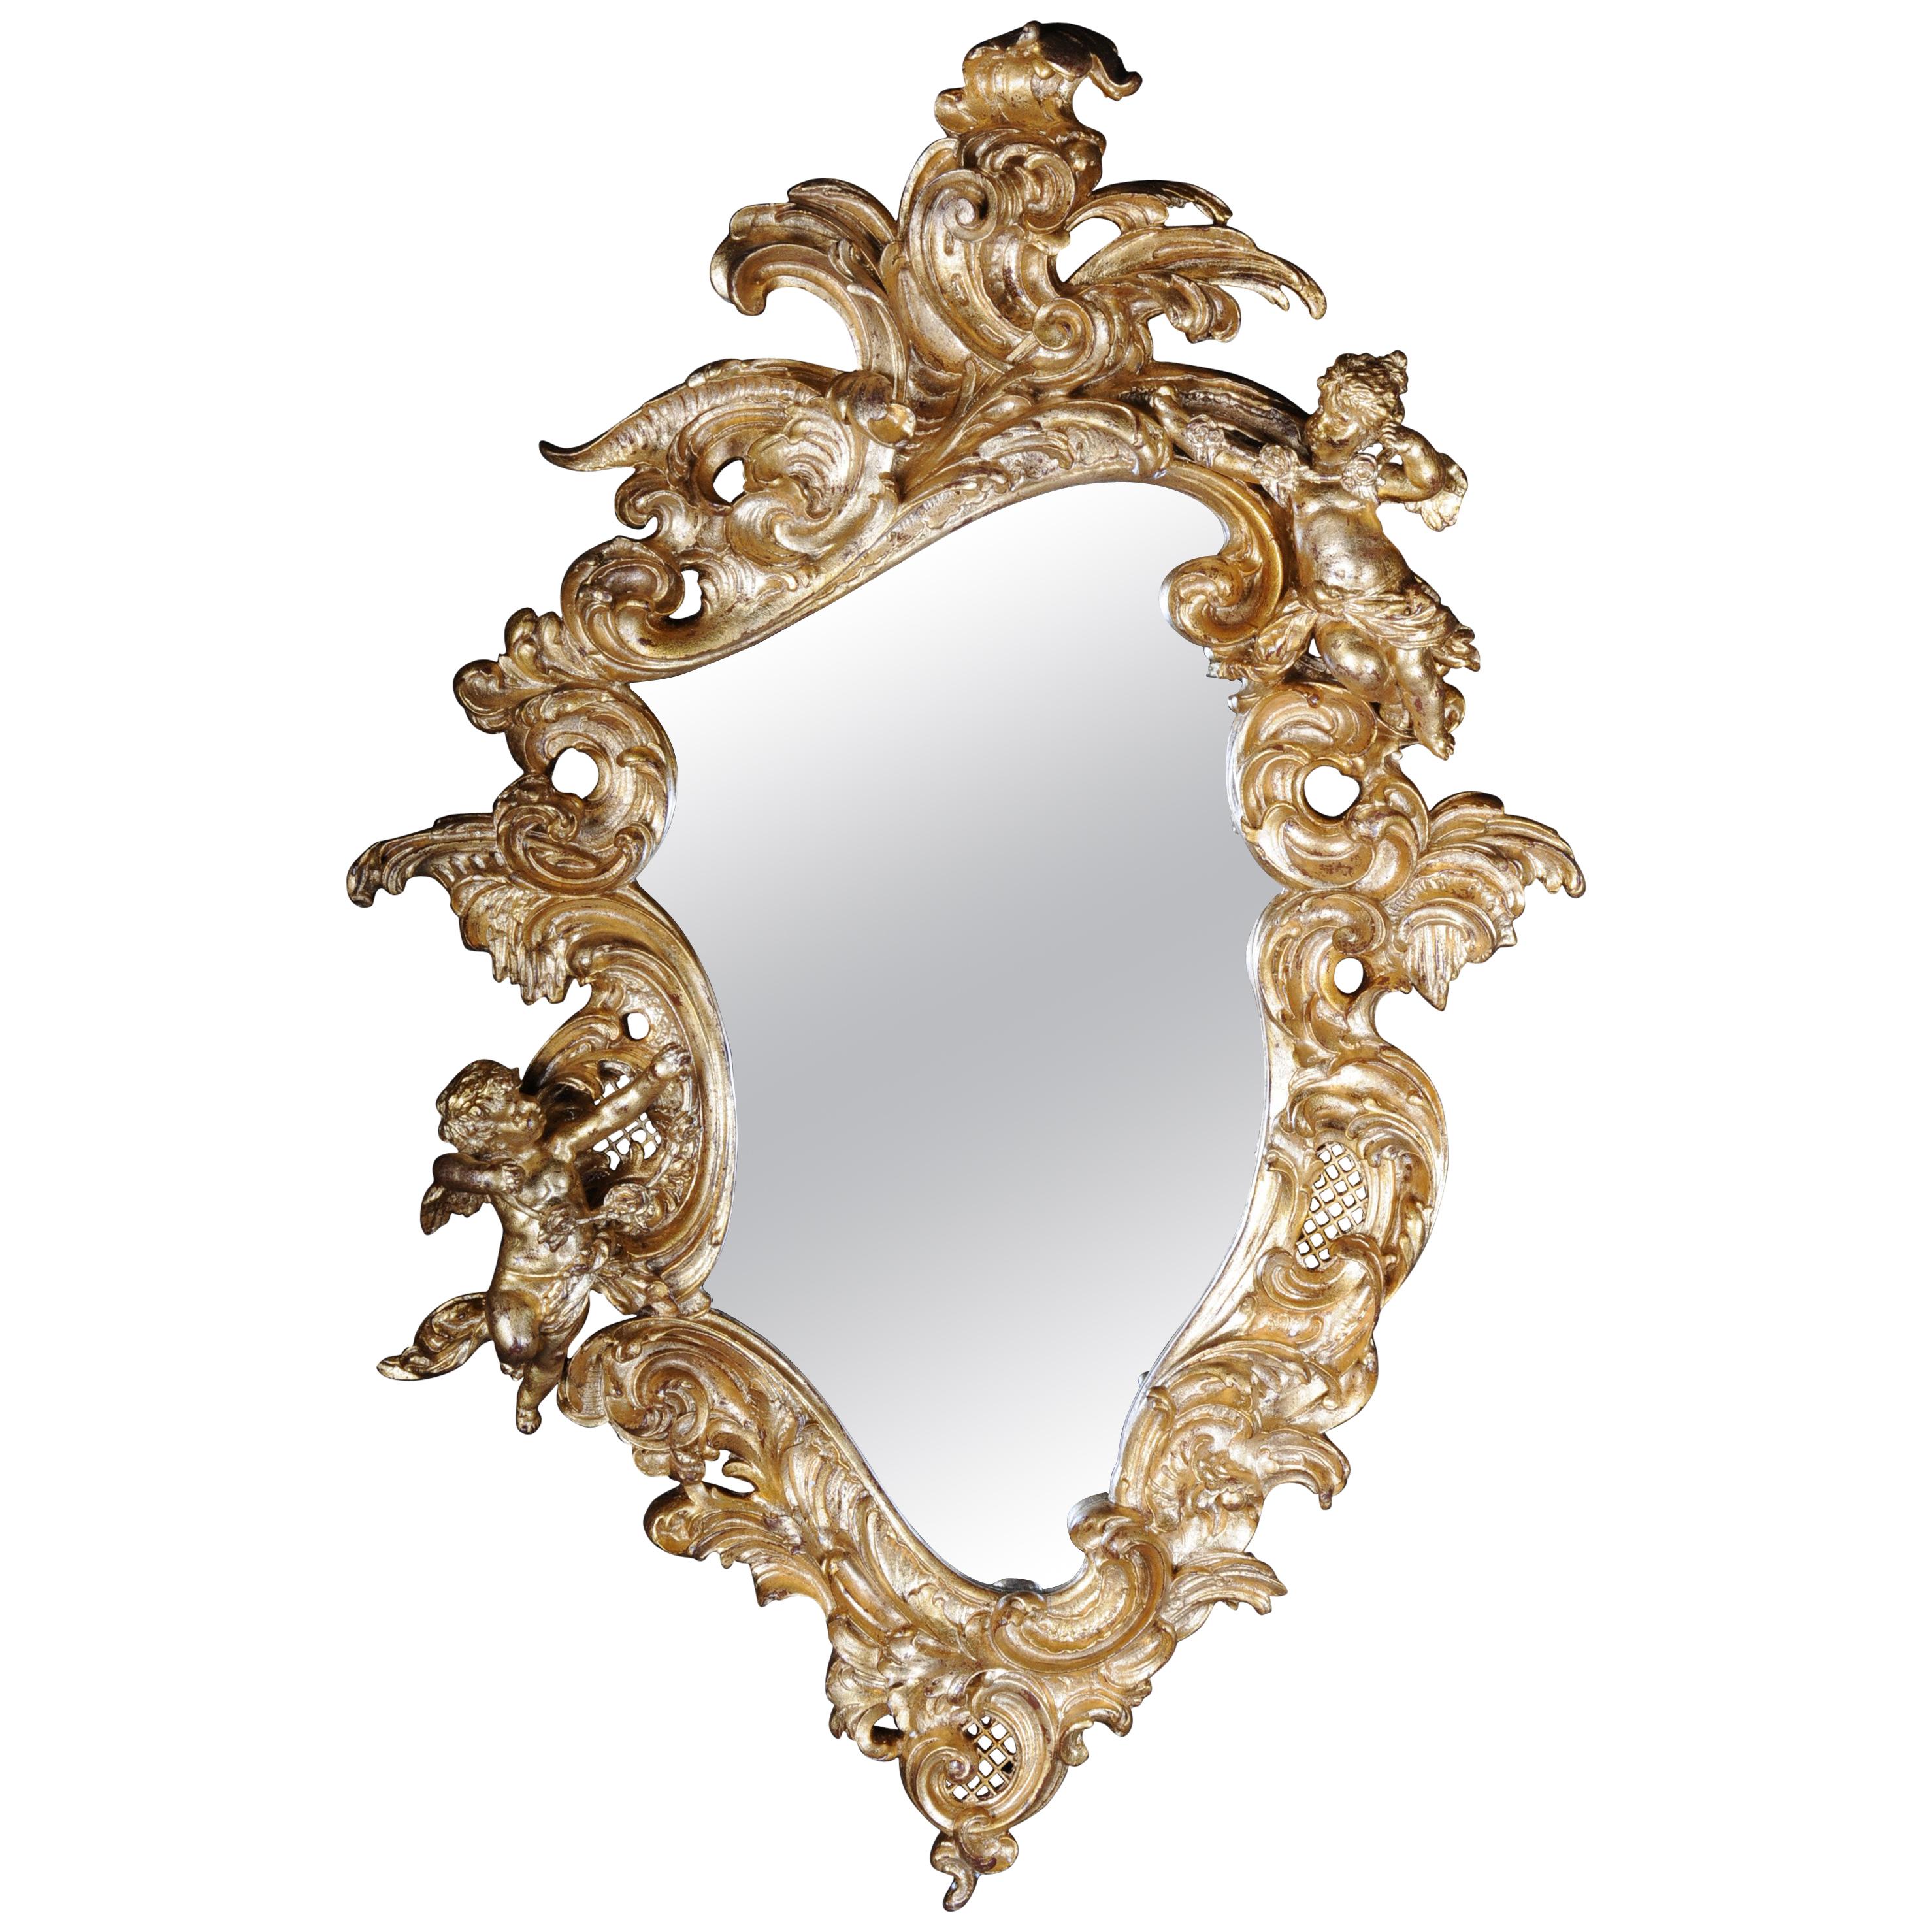 Decorative Rococo / Baroque Wall Mirror with Putti, Gilded